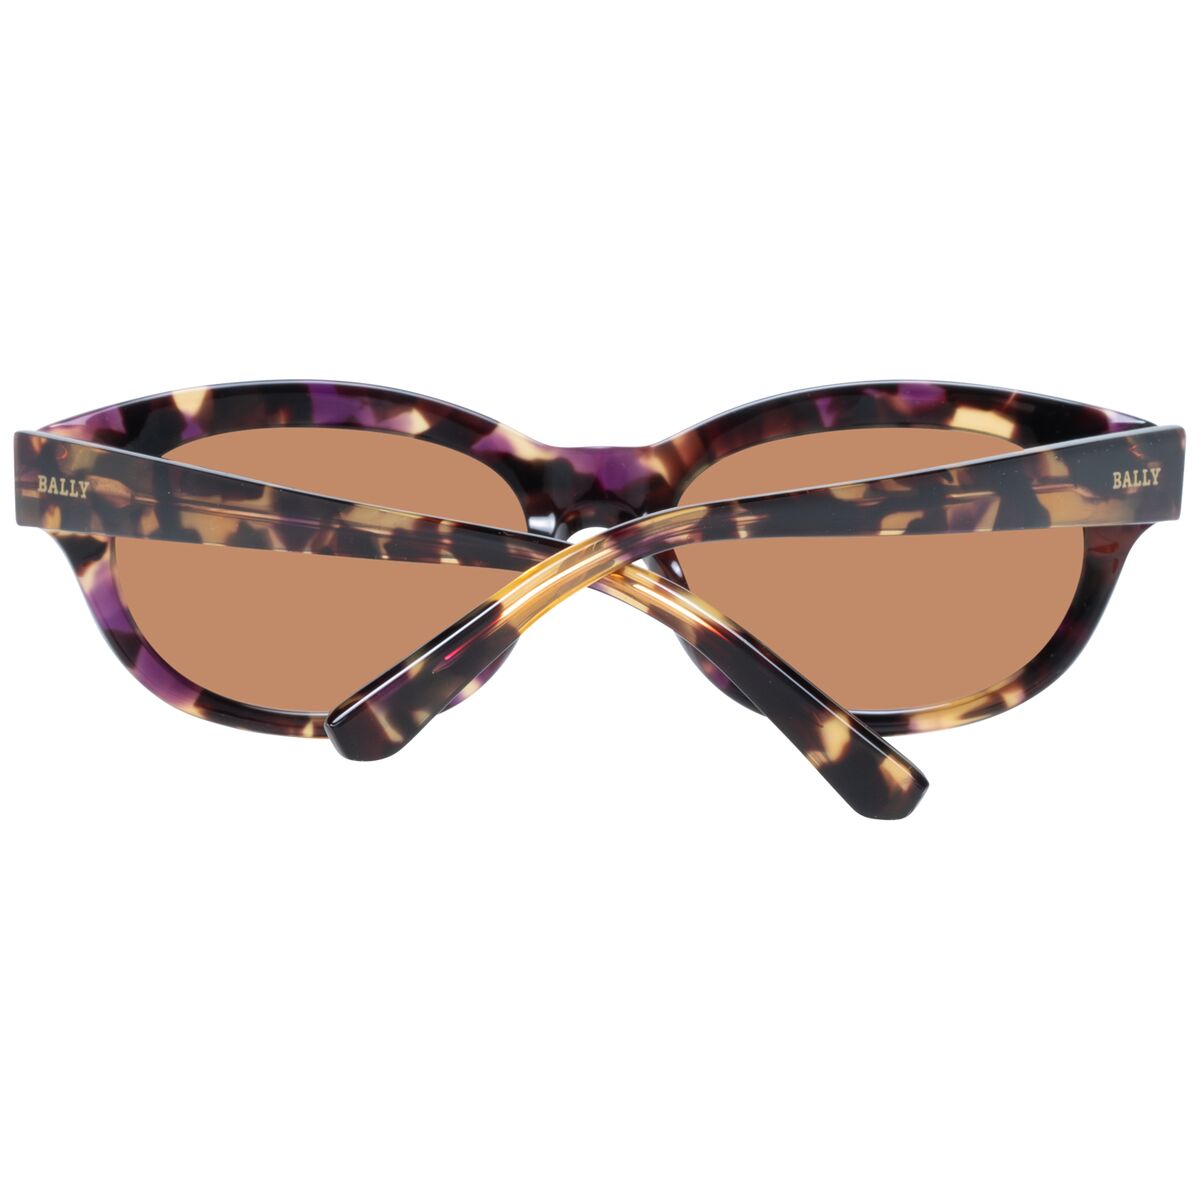 Kaufe Damensonnenbrille Bally BY0070 5455E bei AWK Flagship um € 97.00